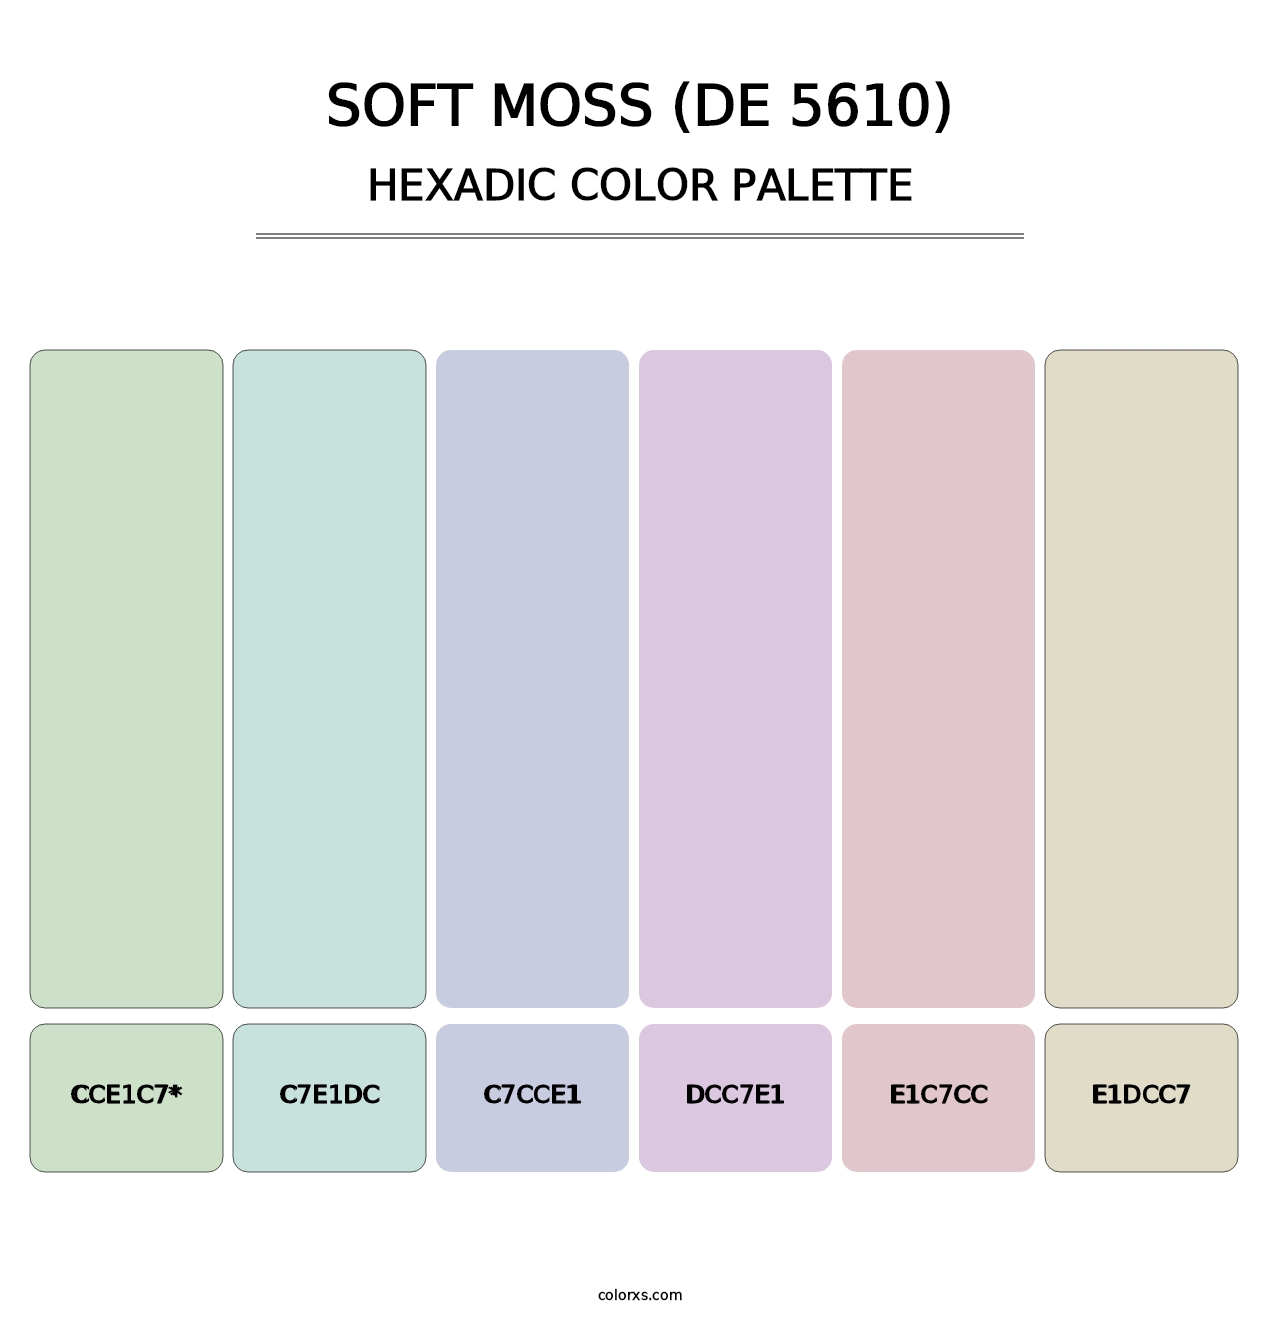 Soft Moss (DE 5610) - Hexadic Color Palette